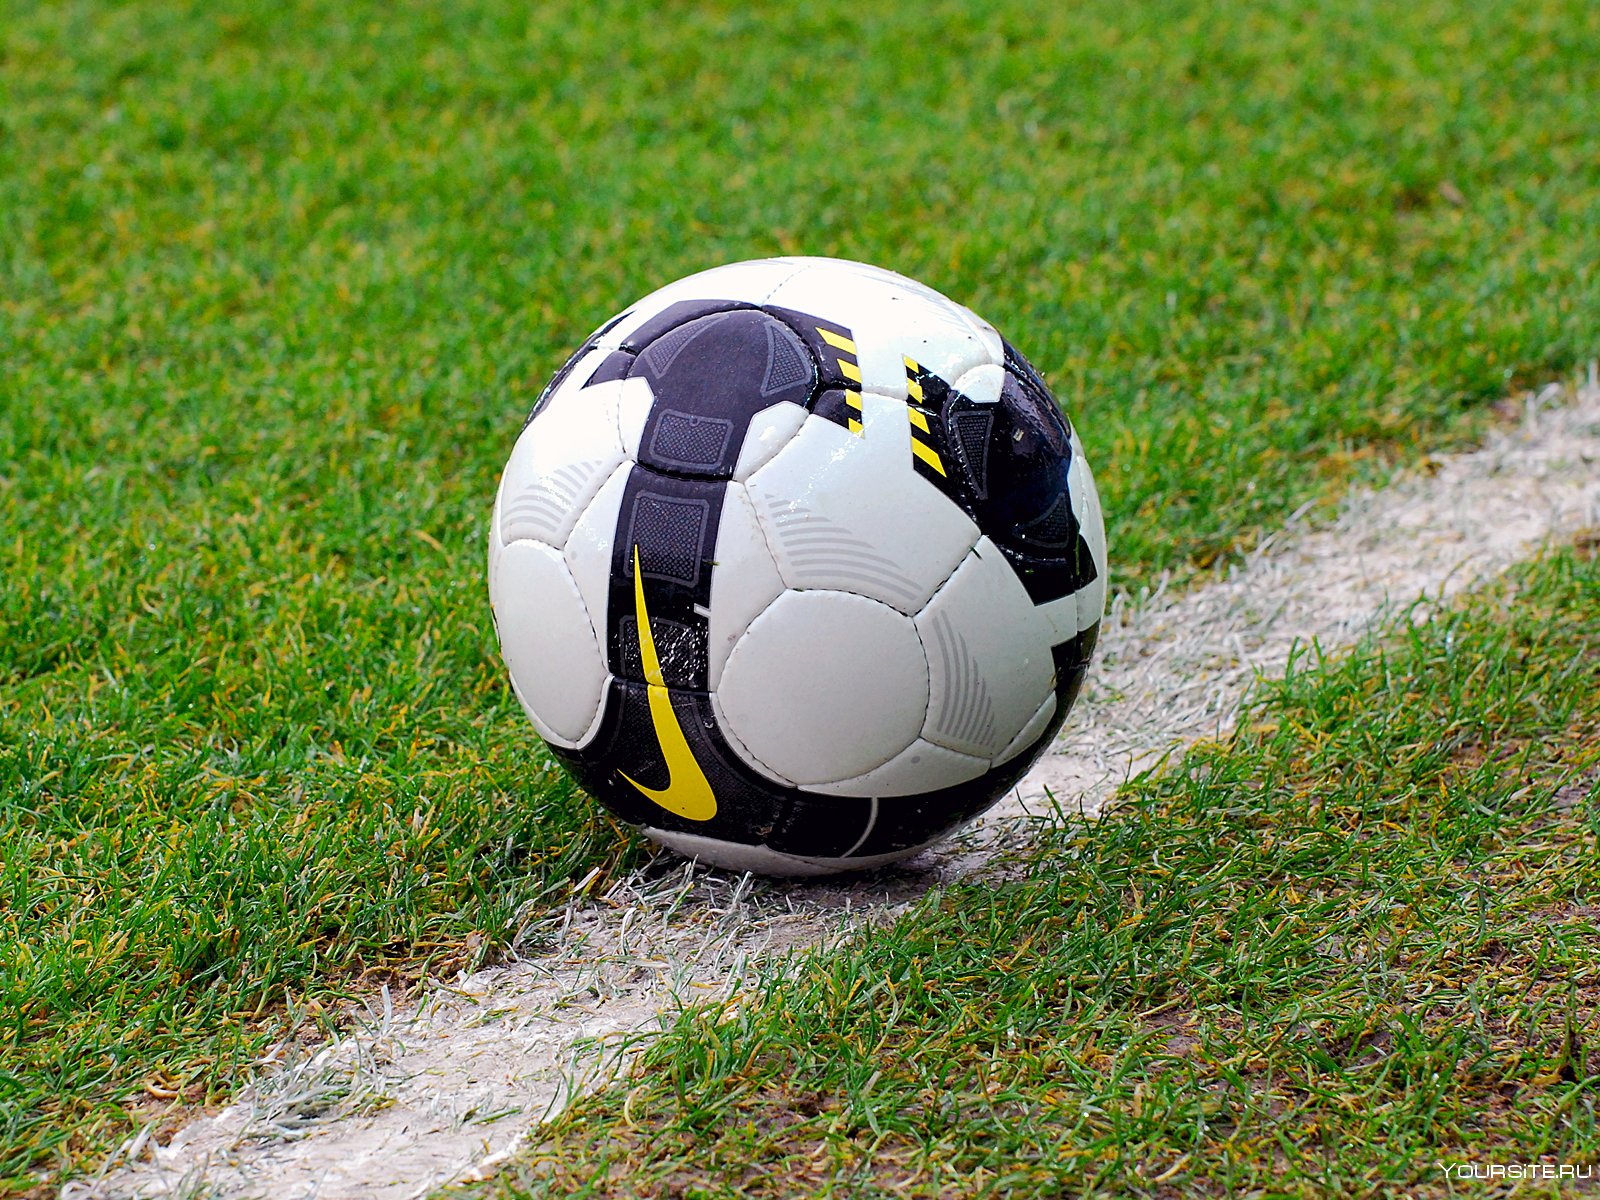 Покажи футбол мяч. Футбольный мяч. Футбольный мячик. Современный футбольный мяч. Футбольный мяч на траве.